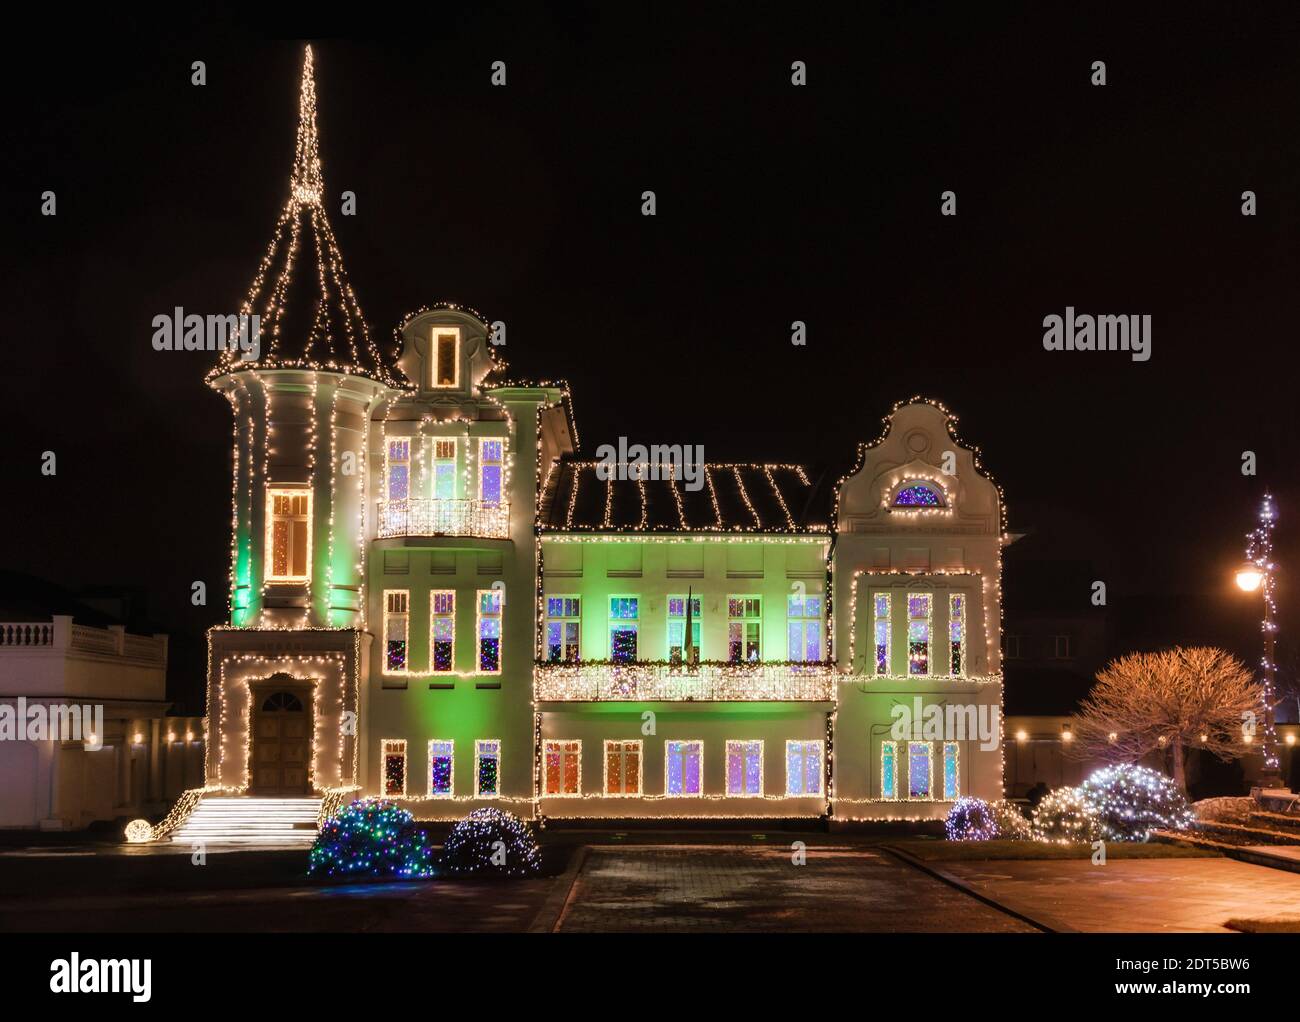 château de mansion avec décoration de noël nouvel an et lumières colorées dans la ville la nuit Banque D'Images